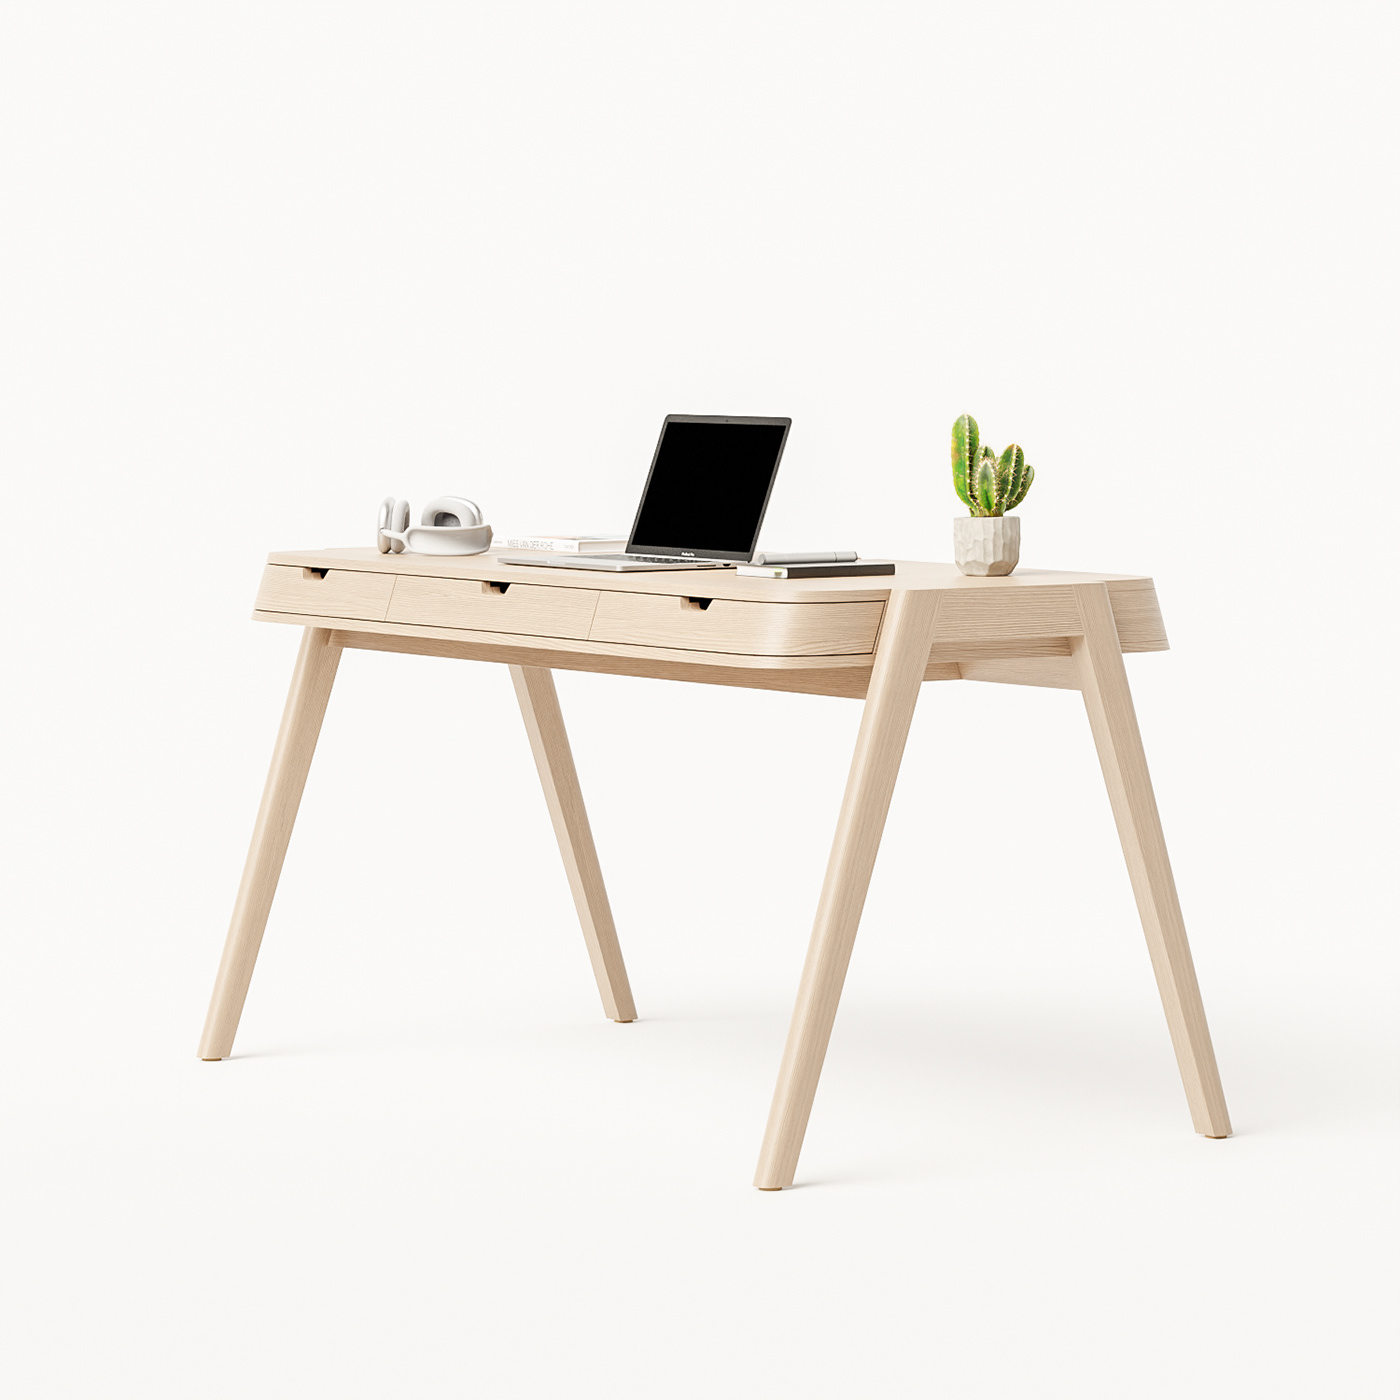 design desk furniture furniture design  minimal product design  table wood wood design